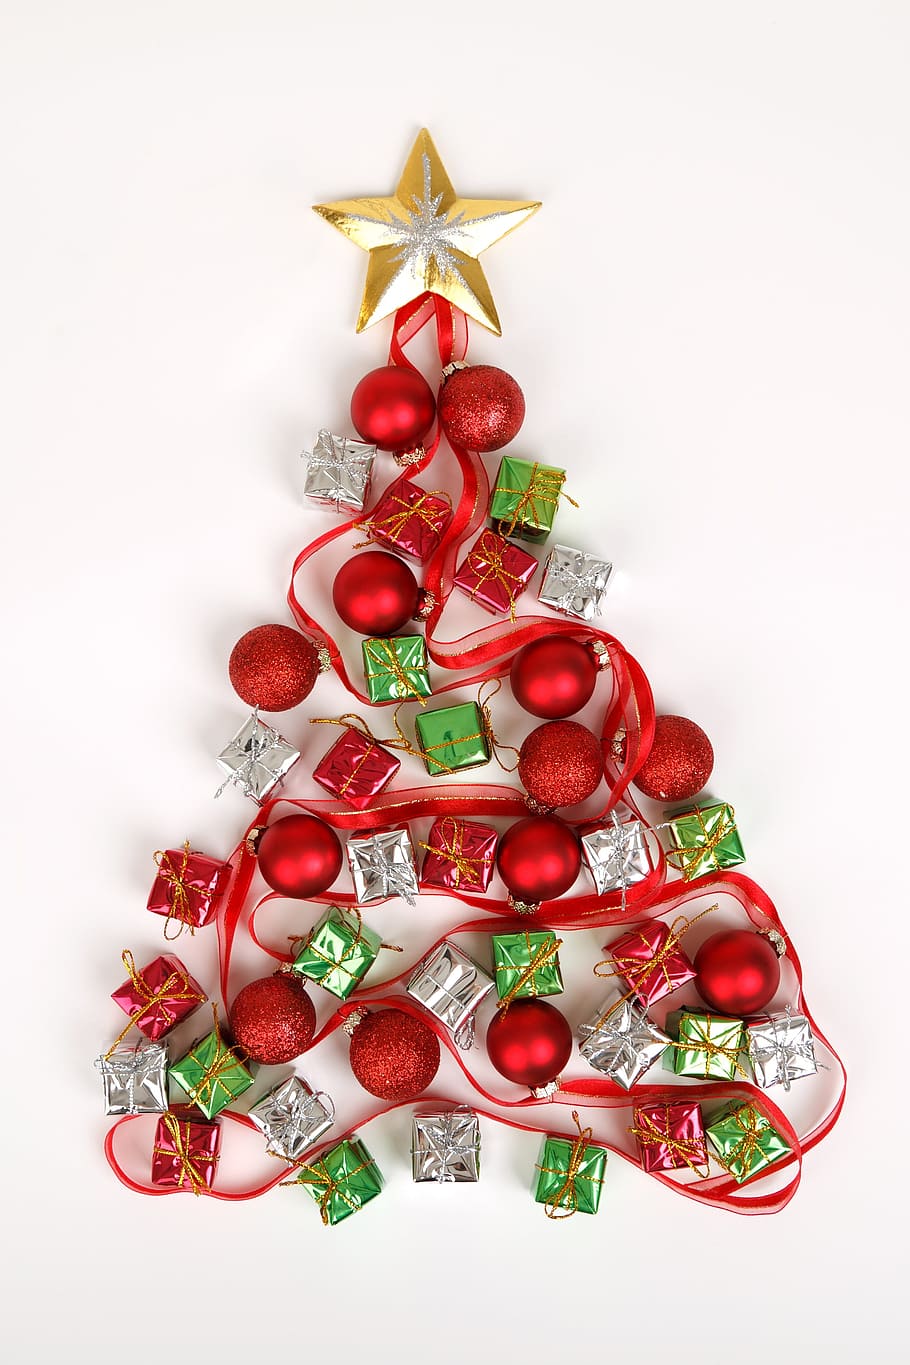 merah, pernak-pernik natal, miniatur, kotak hadiah, krem, bintang, natal merah, pernak-pernik, hadiah, kotak